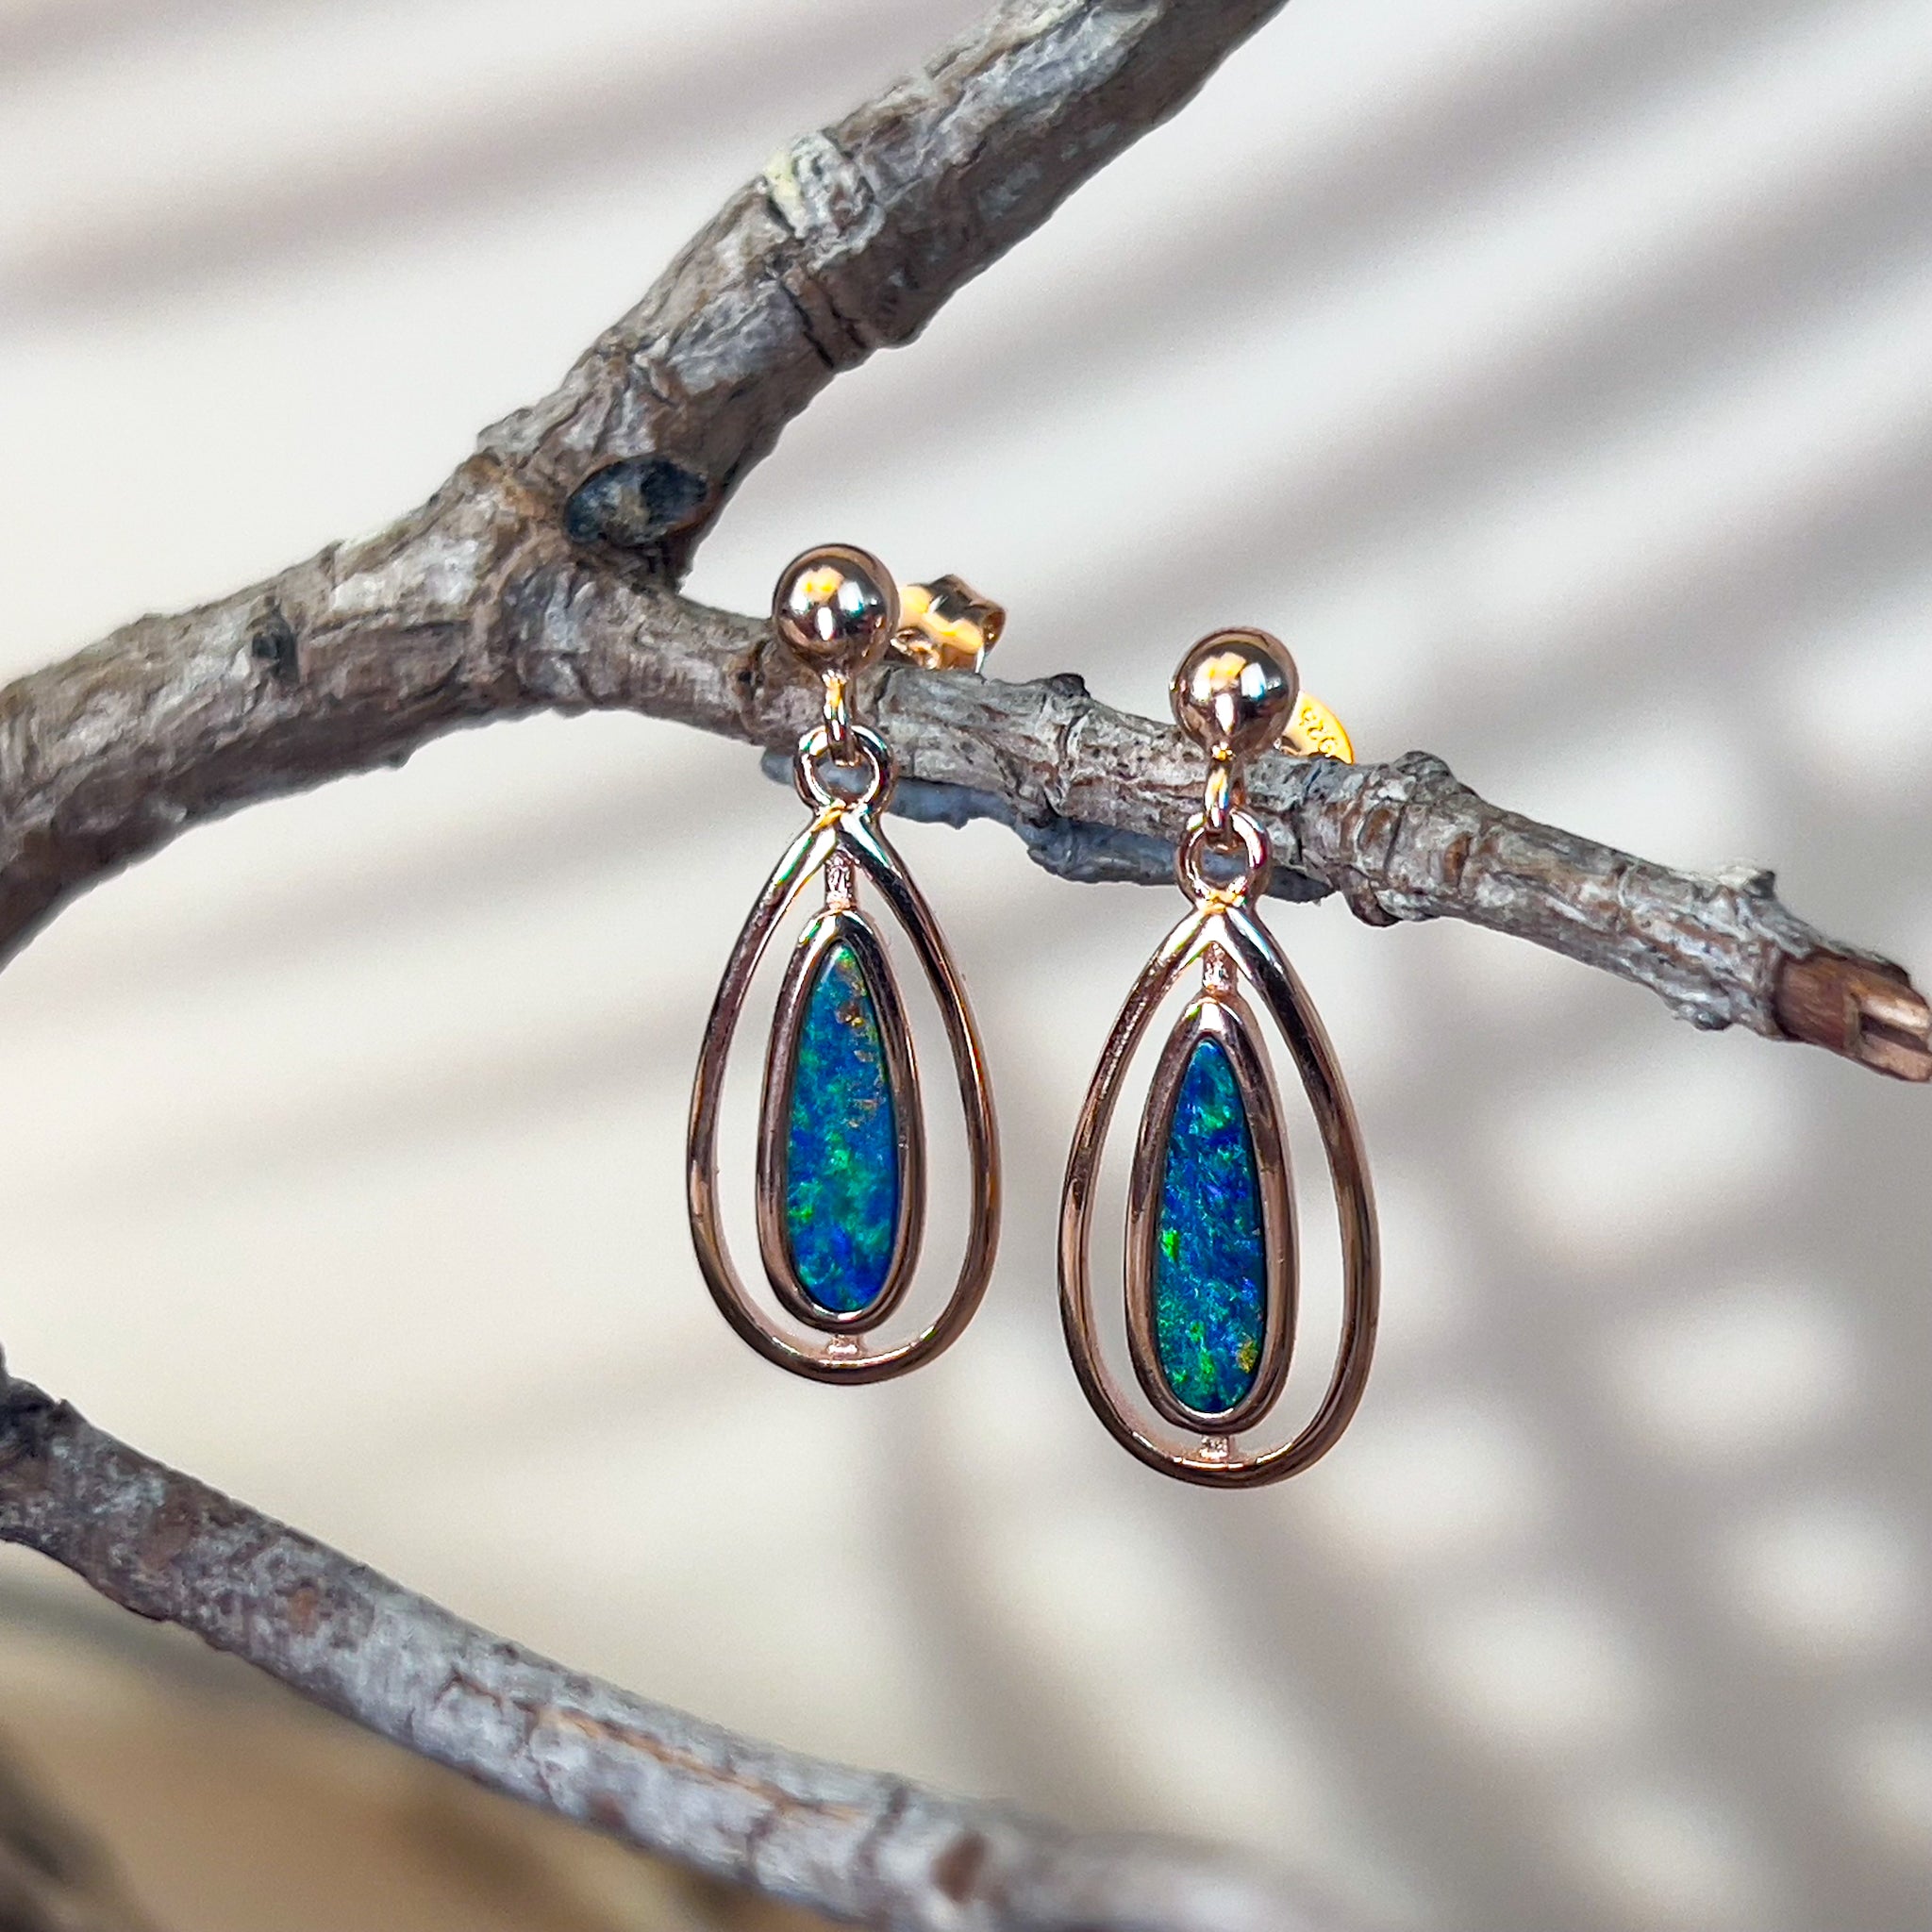 Rose Gold Silver dangling pearshape opal doublet earrings - Masterpiece Jewellery Opal & Gems Sydney Australia | Online Shop